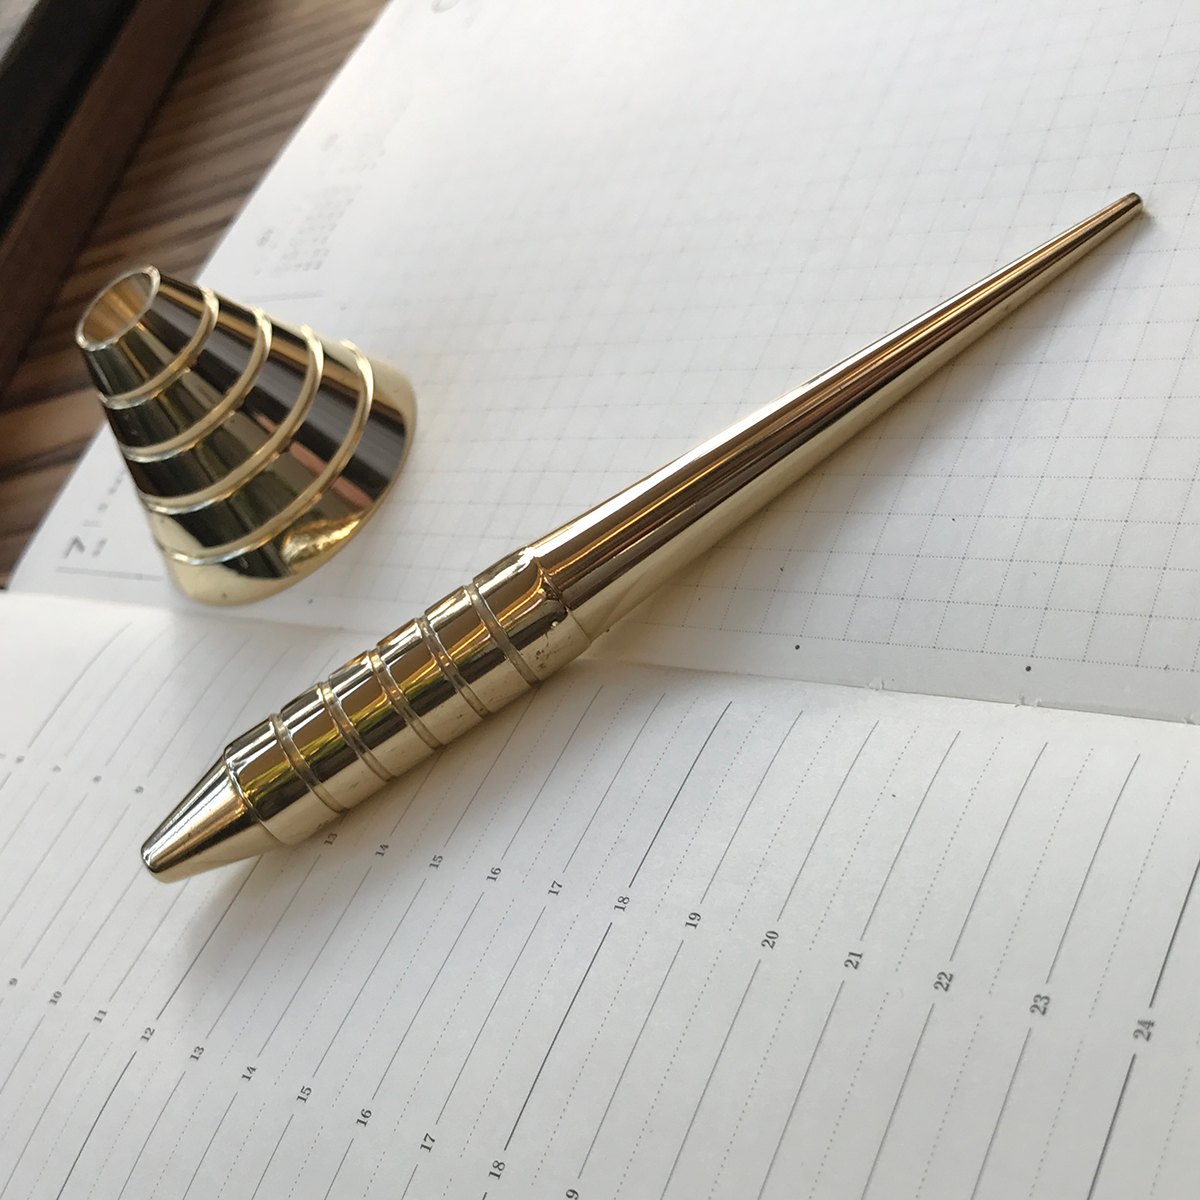 ペンツールシリーズ ボールペンタイプ 真鍮無垢 Standard スタンド付き Iichi ハンドメイド クラフト作品 手仕事品の通販